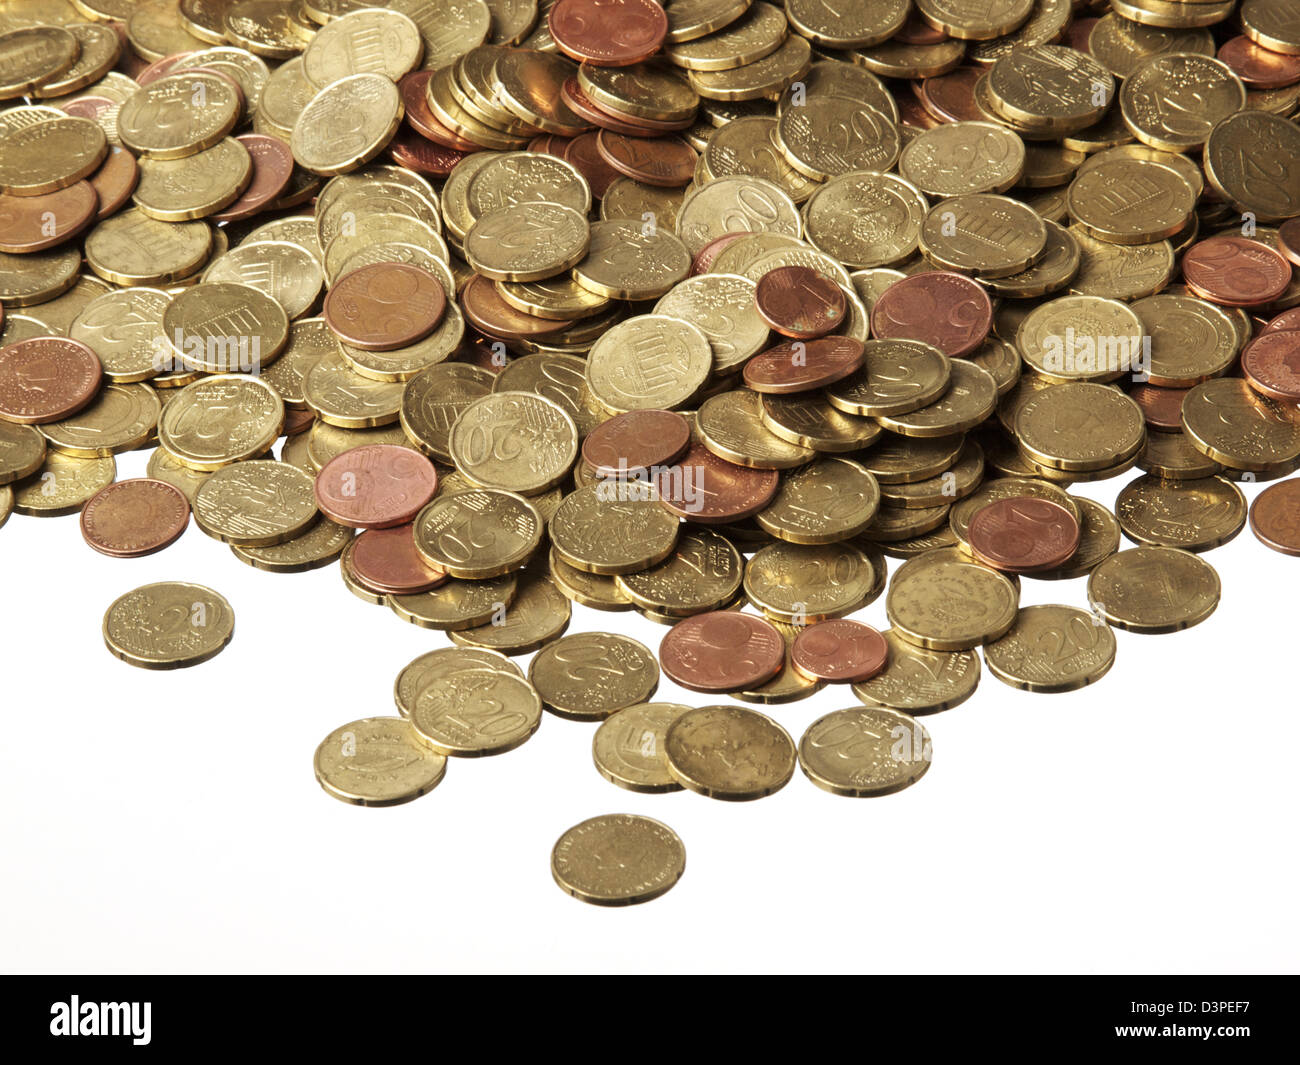 Kleingeld, Haufen von vielen Euro-Münzen auf weißem Hintergrund. Vor allem 20 und 5-Cent-Münzen. Stockfoto